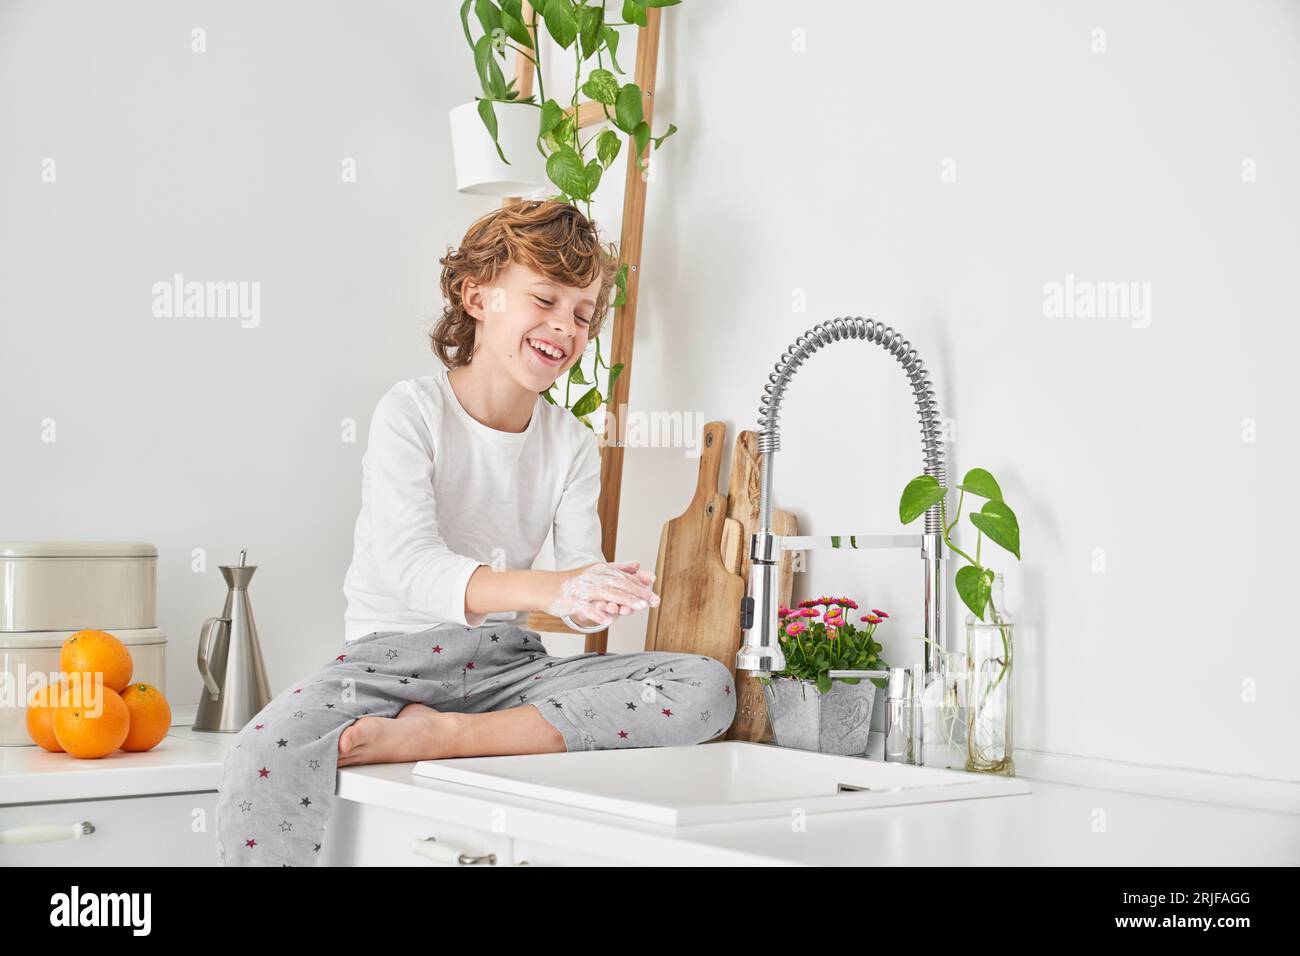 Garçon aux cheveux bouclés pieds nus assis près de l'évier et se lavant les mains avec du savon pour prévenir la propagation des bactéries dans la cuisine le matin Banque D'Images